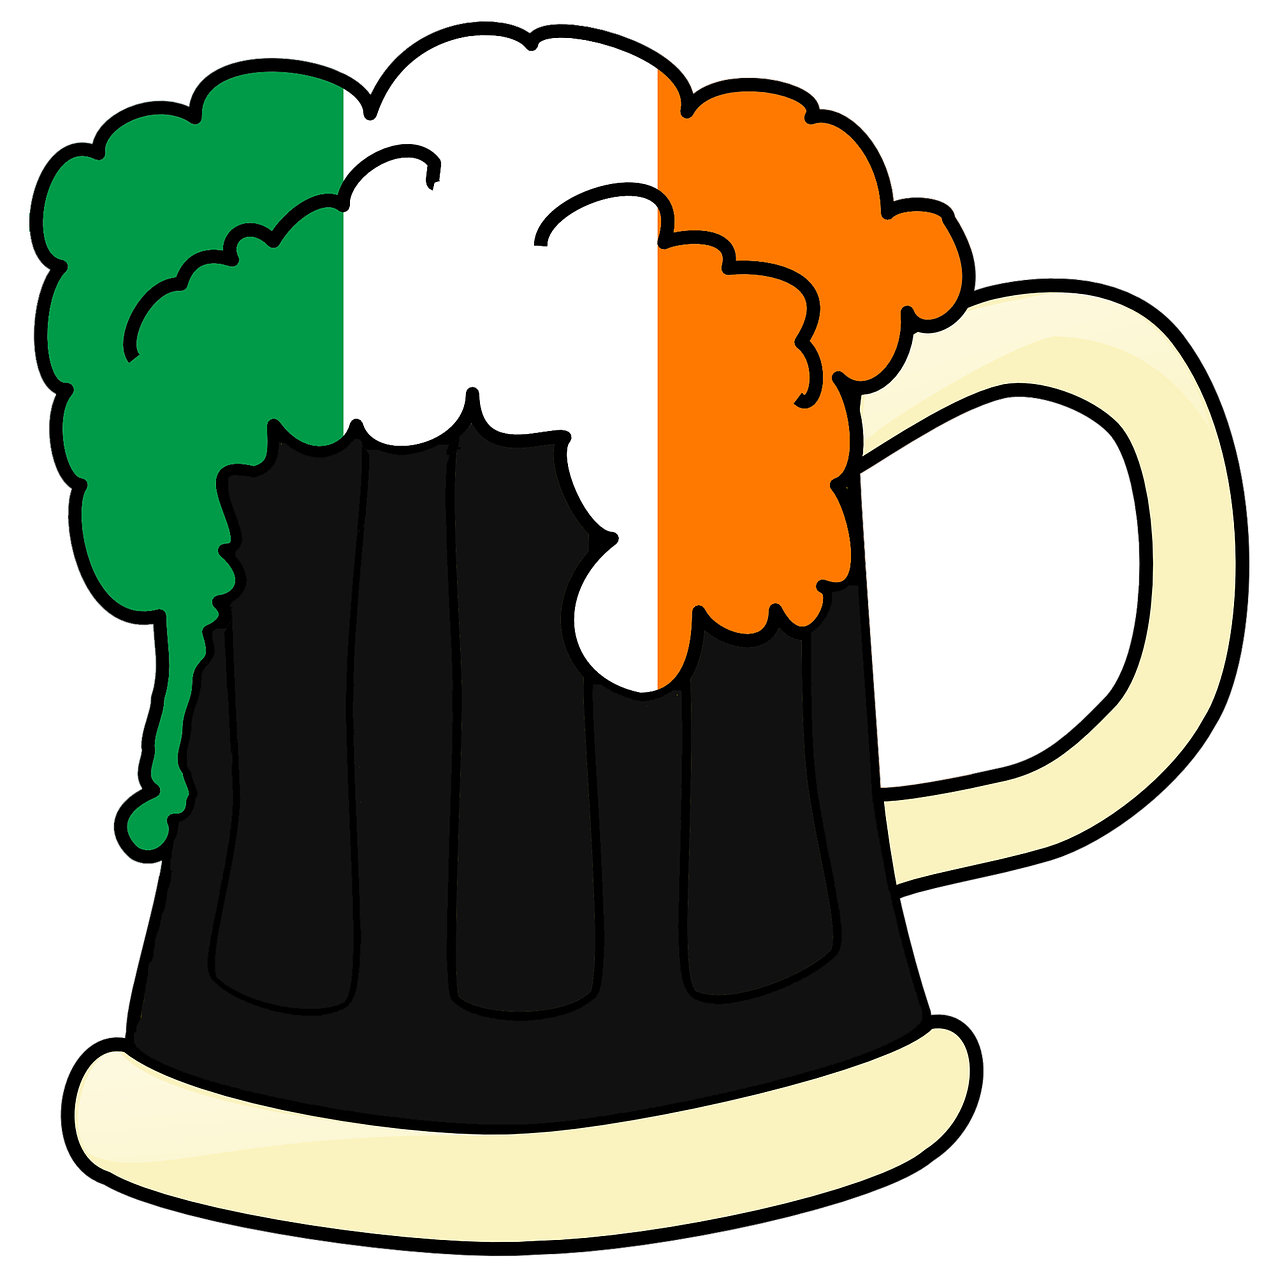 ireland beer irish free photo